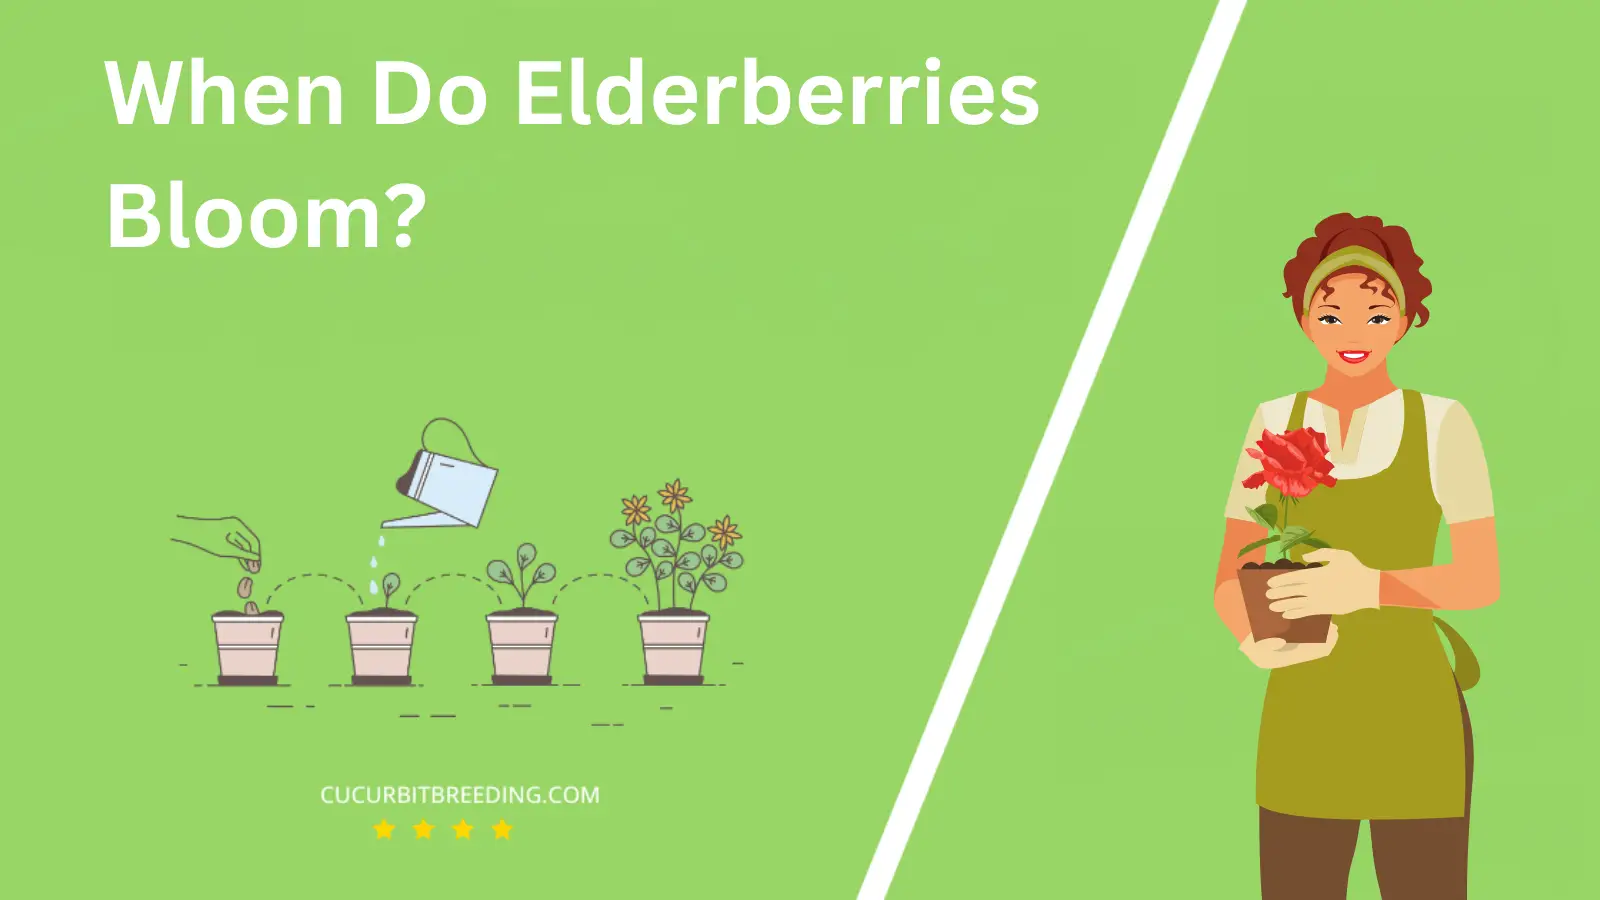 When Do Elderberries Bloom?